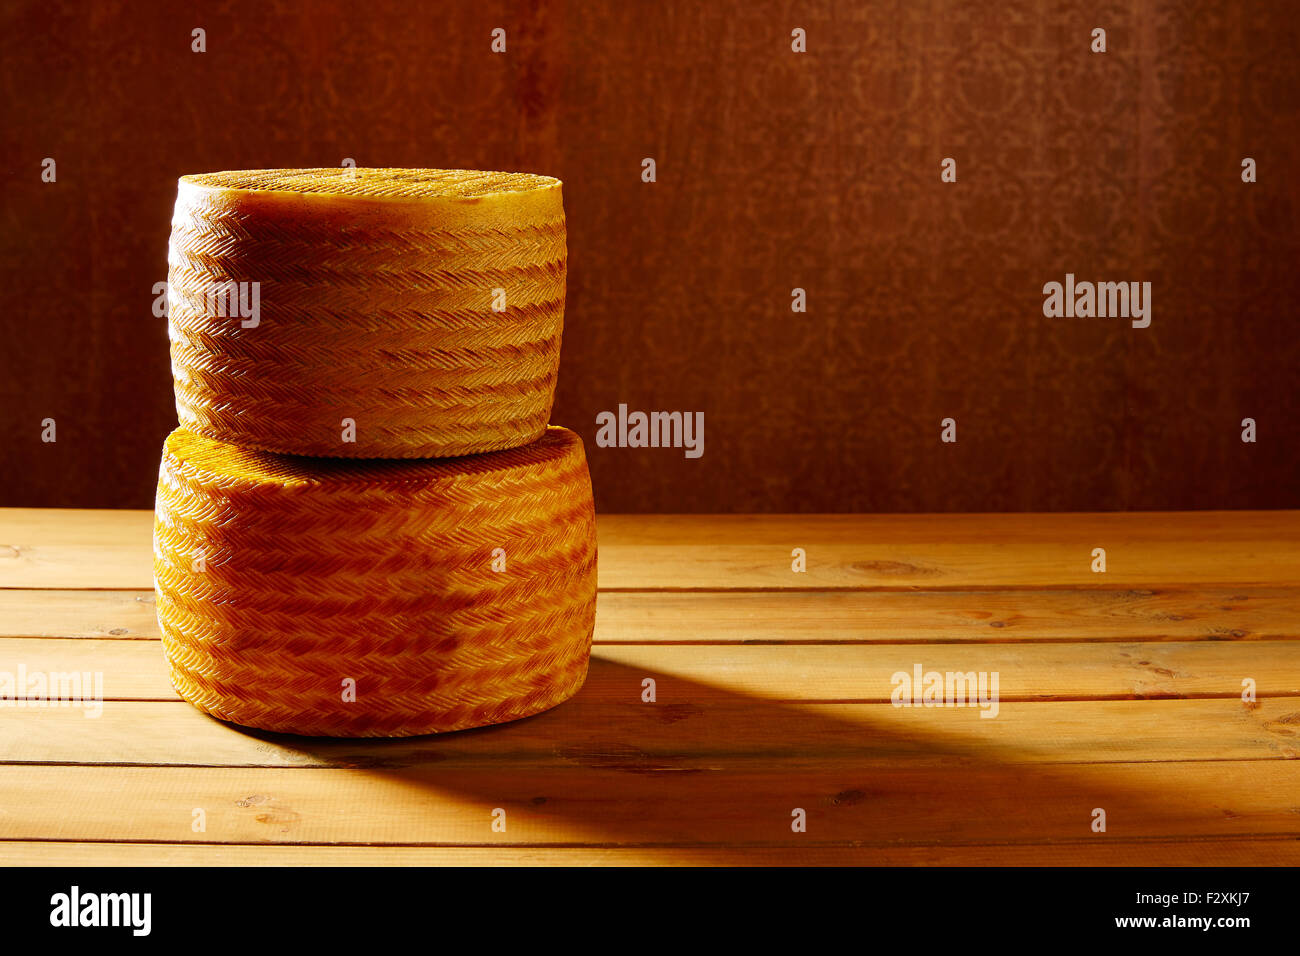 El queso manchego desde España en mesa de madera apiladas Foto de stock